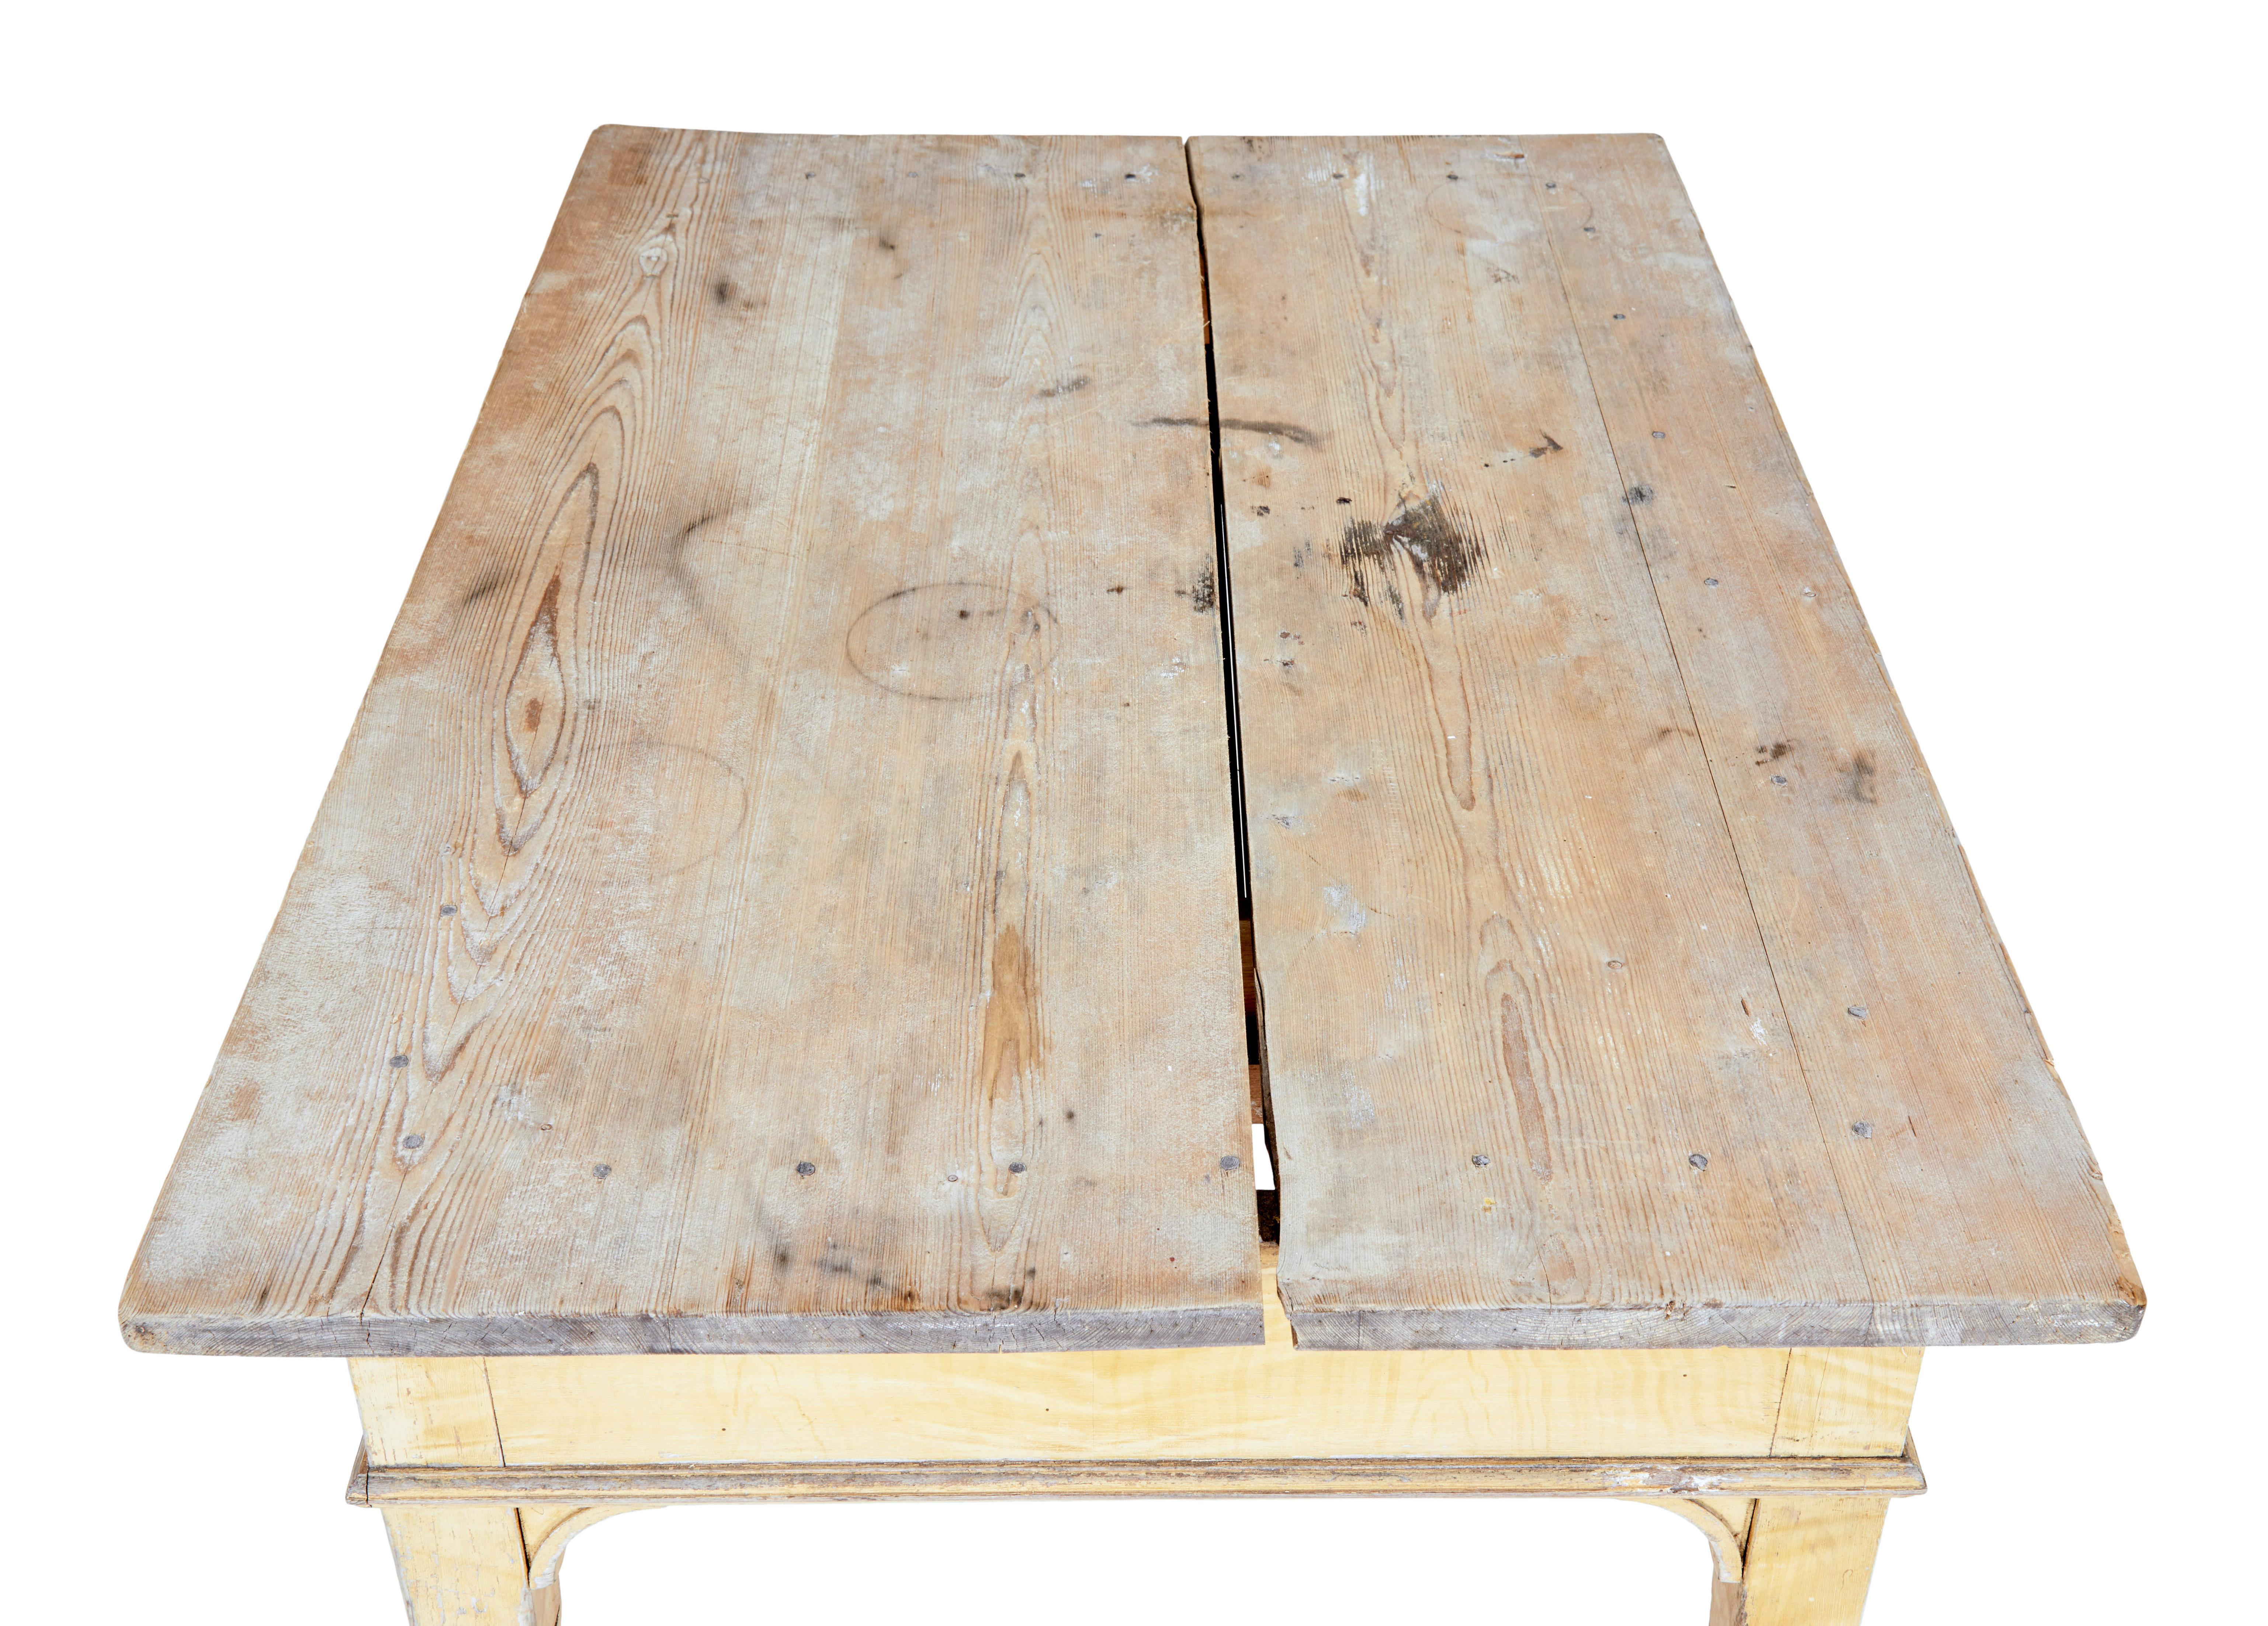 Table de cuisine suédoise en pin peint du XIXe siècle, vers 1870.

Table de bonne qualité à usages multiples dans la maison, avec une hauteur de genou de 23,5 pouces.  La table en pin présente une fente d'âge au centre, qui pourrait être refermée en